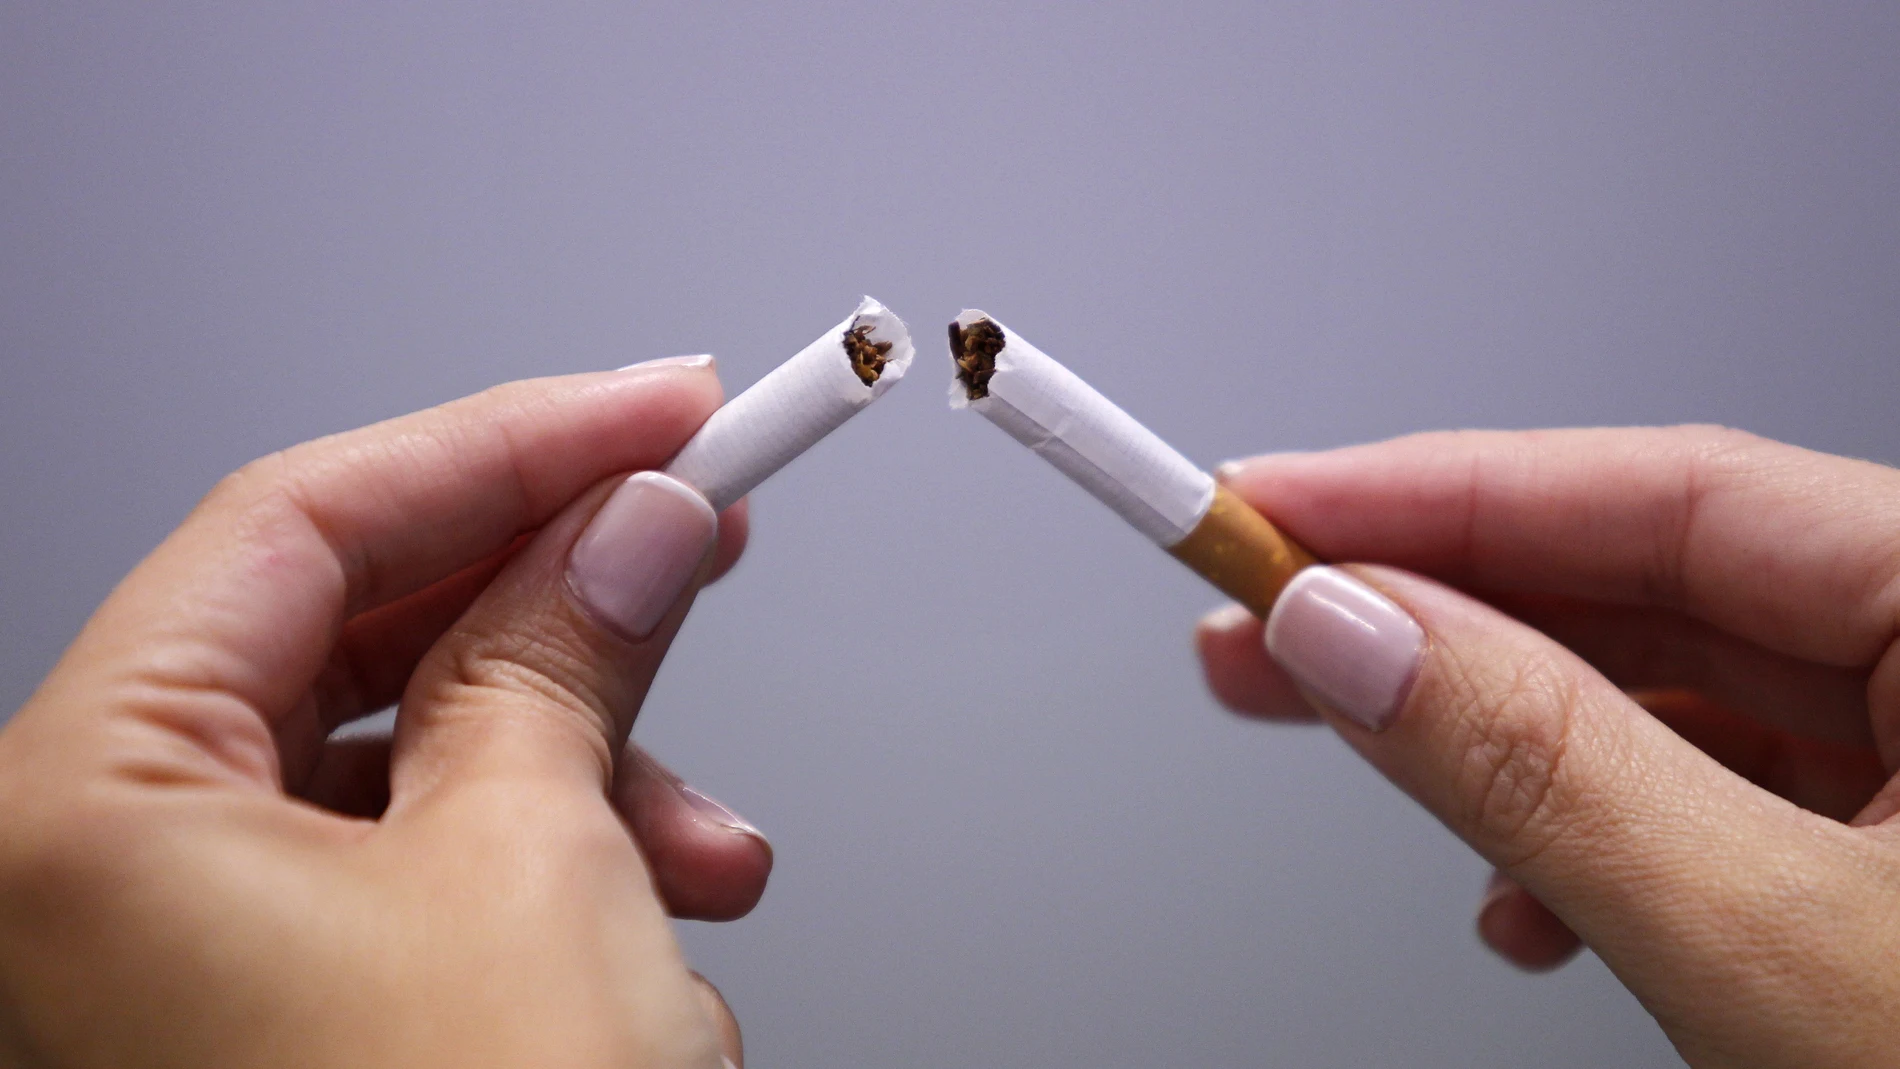 Fumar tabaco aumenta el riesgo de depresión y esquizofrenia, pero también de que la depresión y la esquizofrenia aumentan la probabilidad de fumar